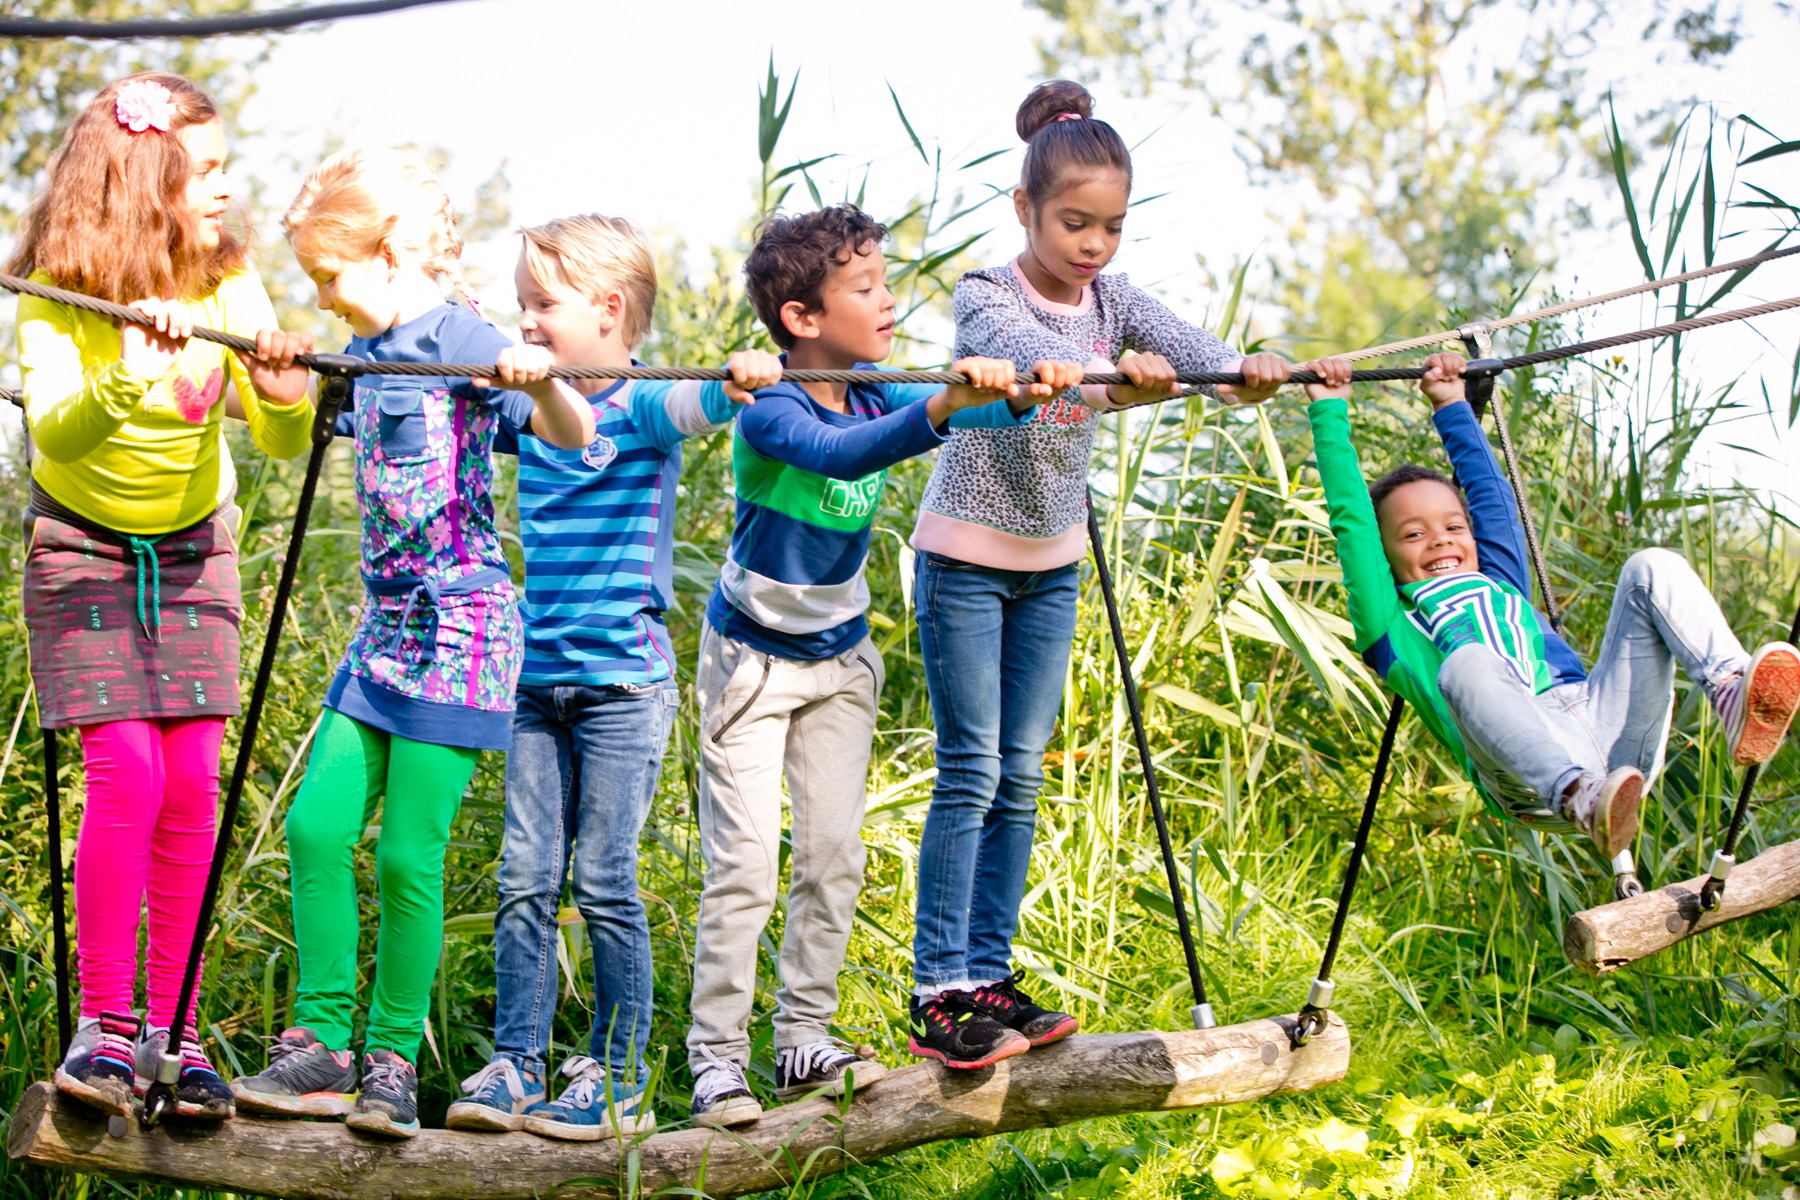 zonne Compliment noot Onze 10 favoriete speeltuinen in Amsterdam | Kidsproof Amsterdam